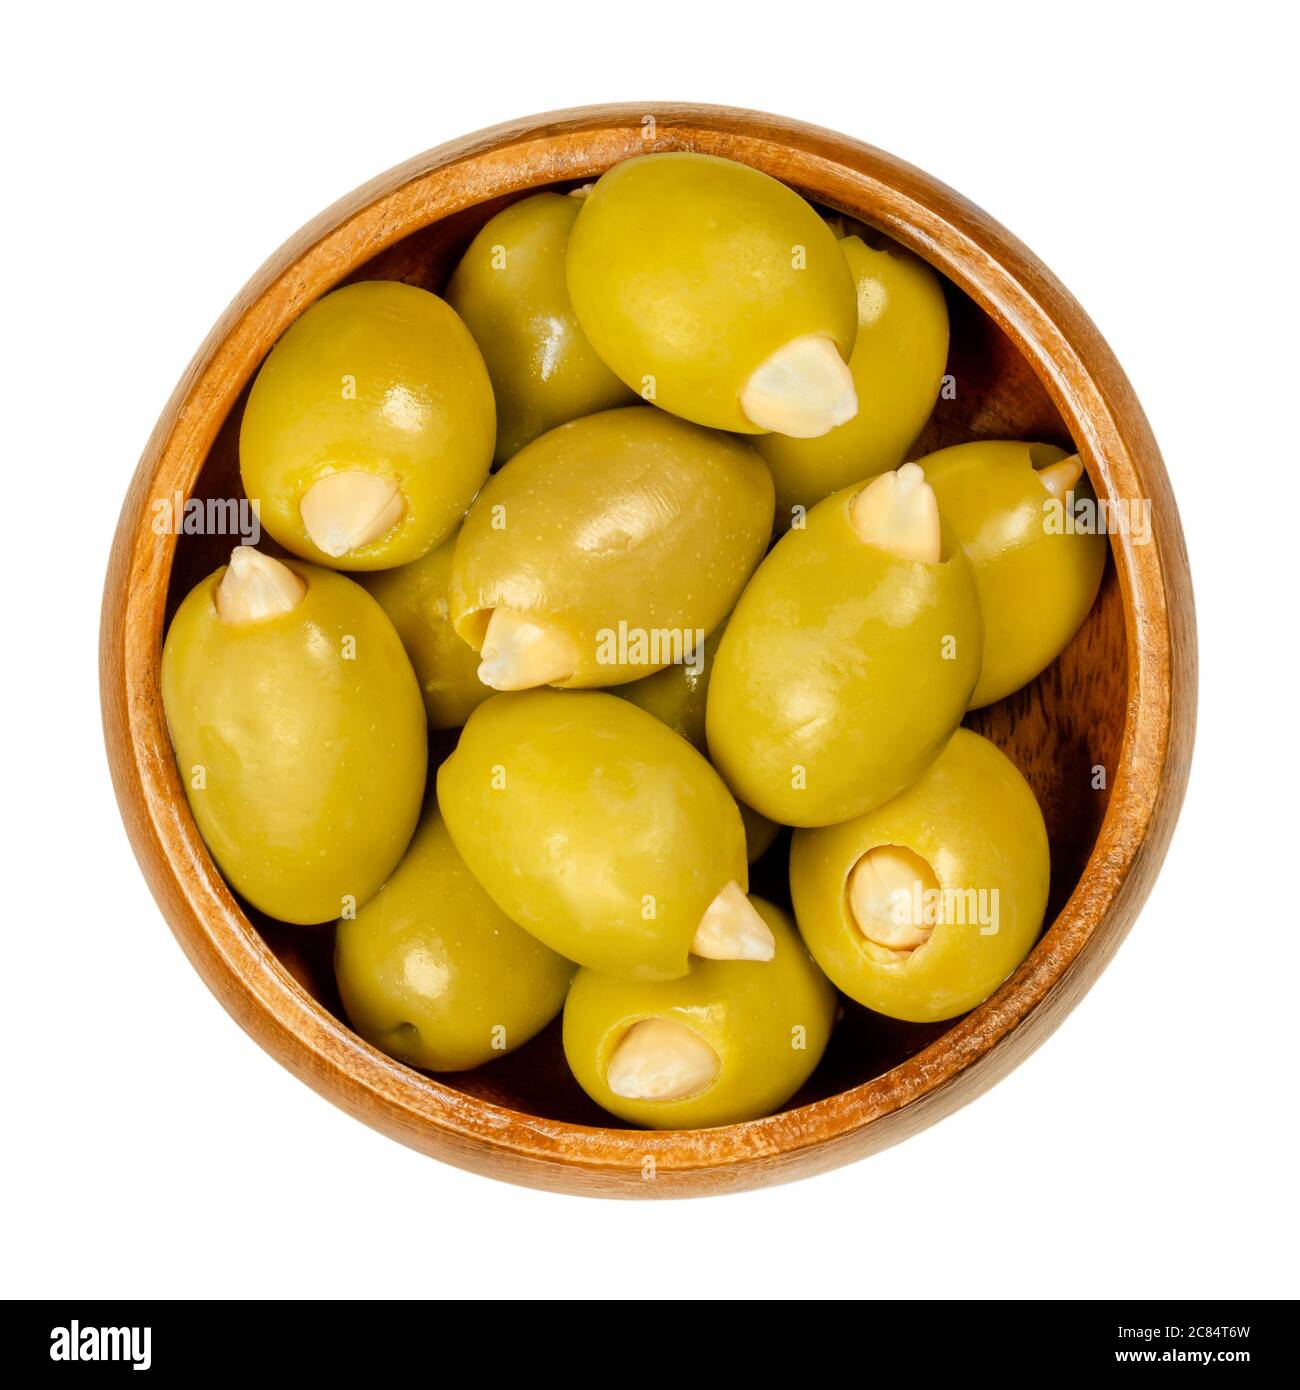 Mandel gefüllte grüne Oliven in Holzschüssel. Große europäische Oliven, Früchte von Olea europaea, handgefüllt mit eingelegten knackigen Mandeln. Stockfoto